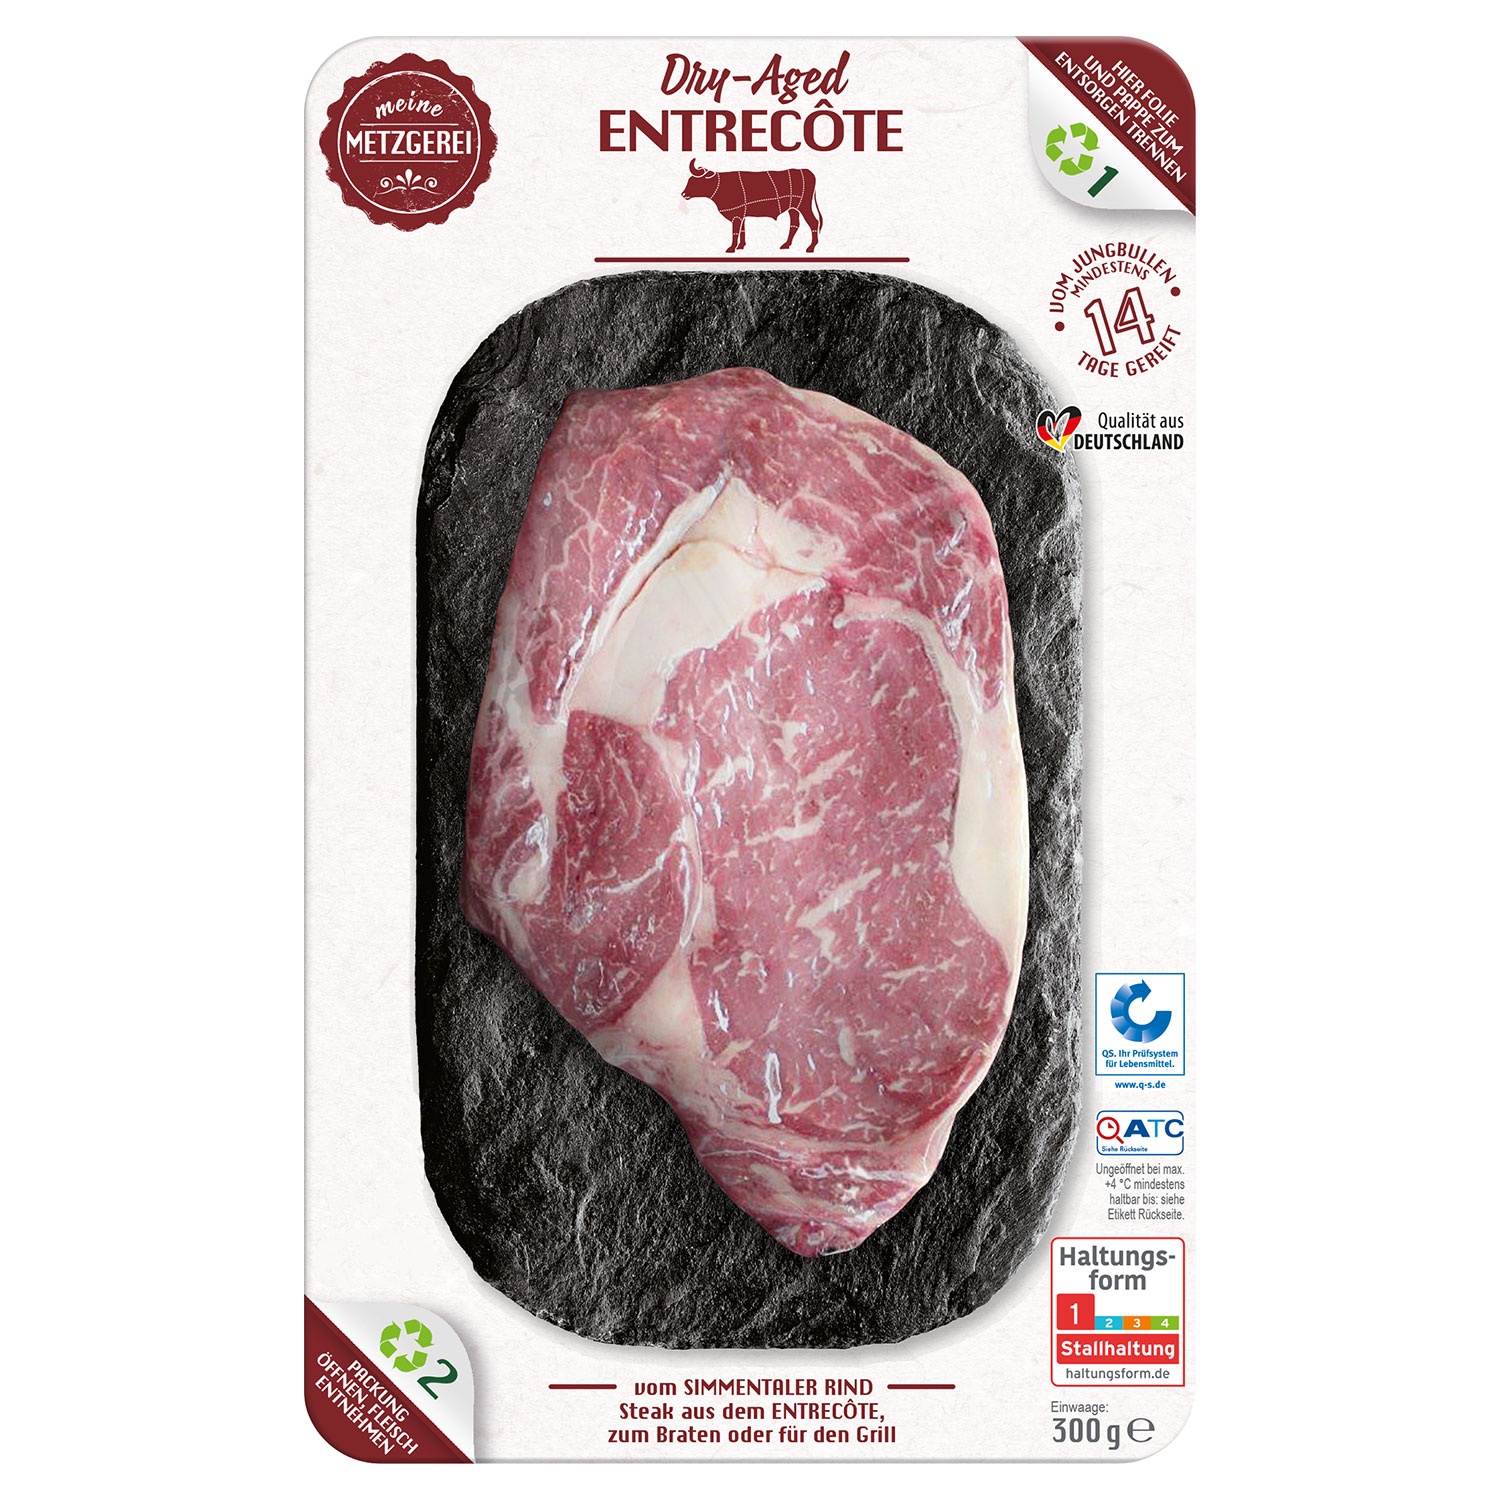 MEINE METZGEREI Dry-aged-Steak vom Simmentaler Rind 300 g